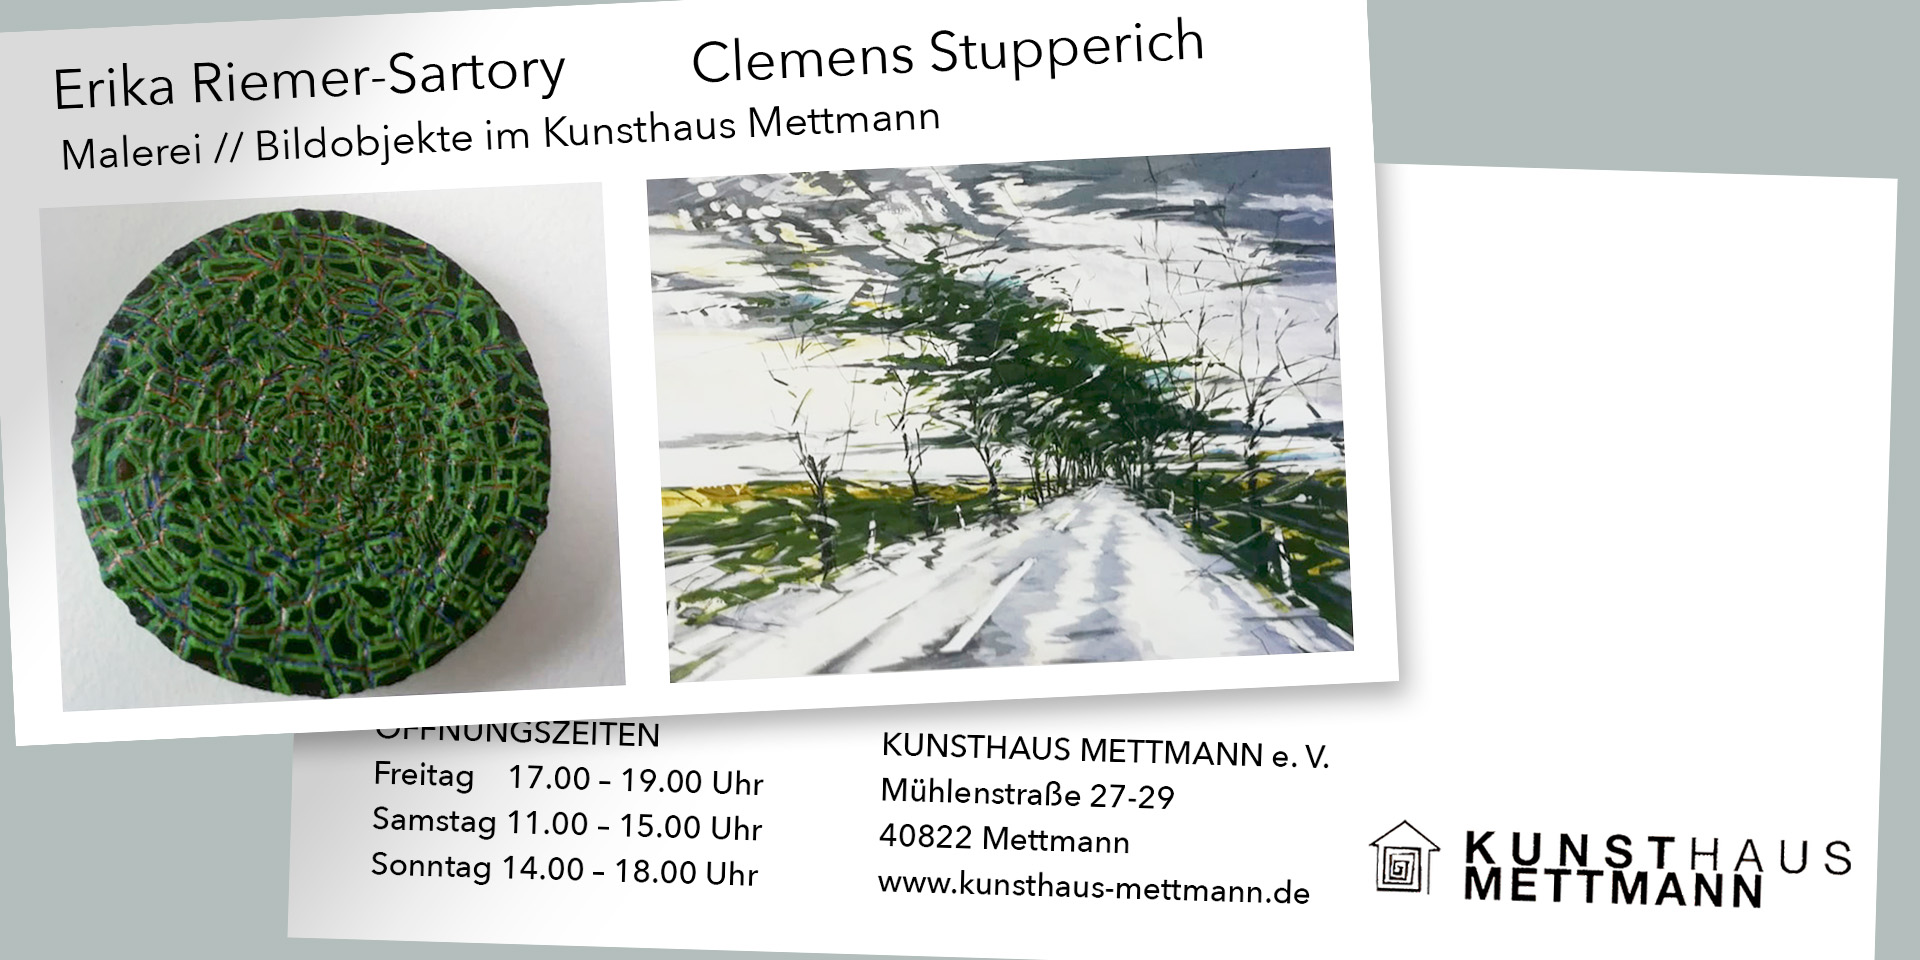 Erika Riemer-Sartory + Clemens Stopperich im Kunsthaus Mettmann. Flyer zur Ausstellung